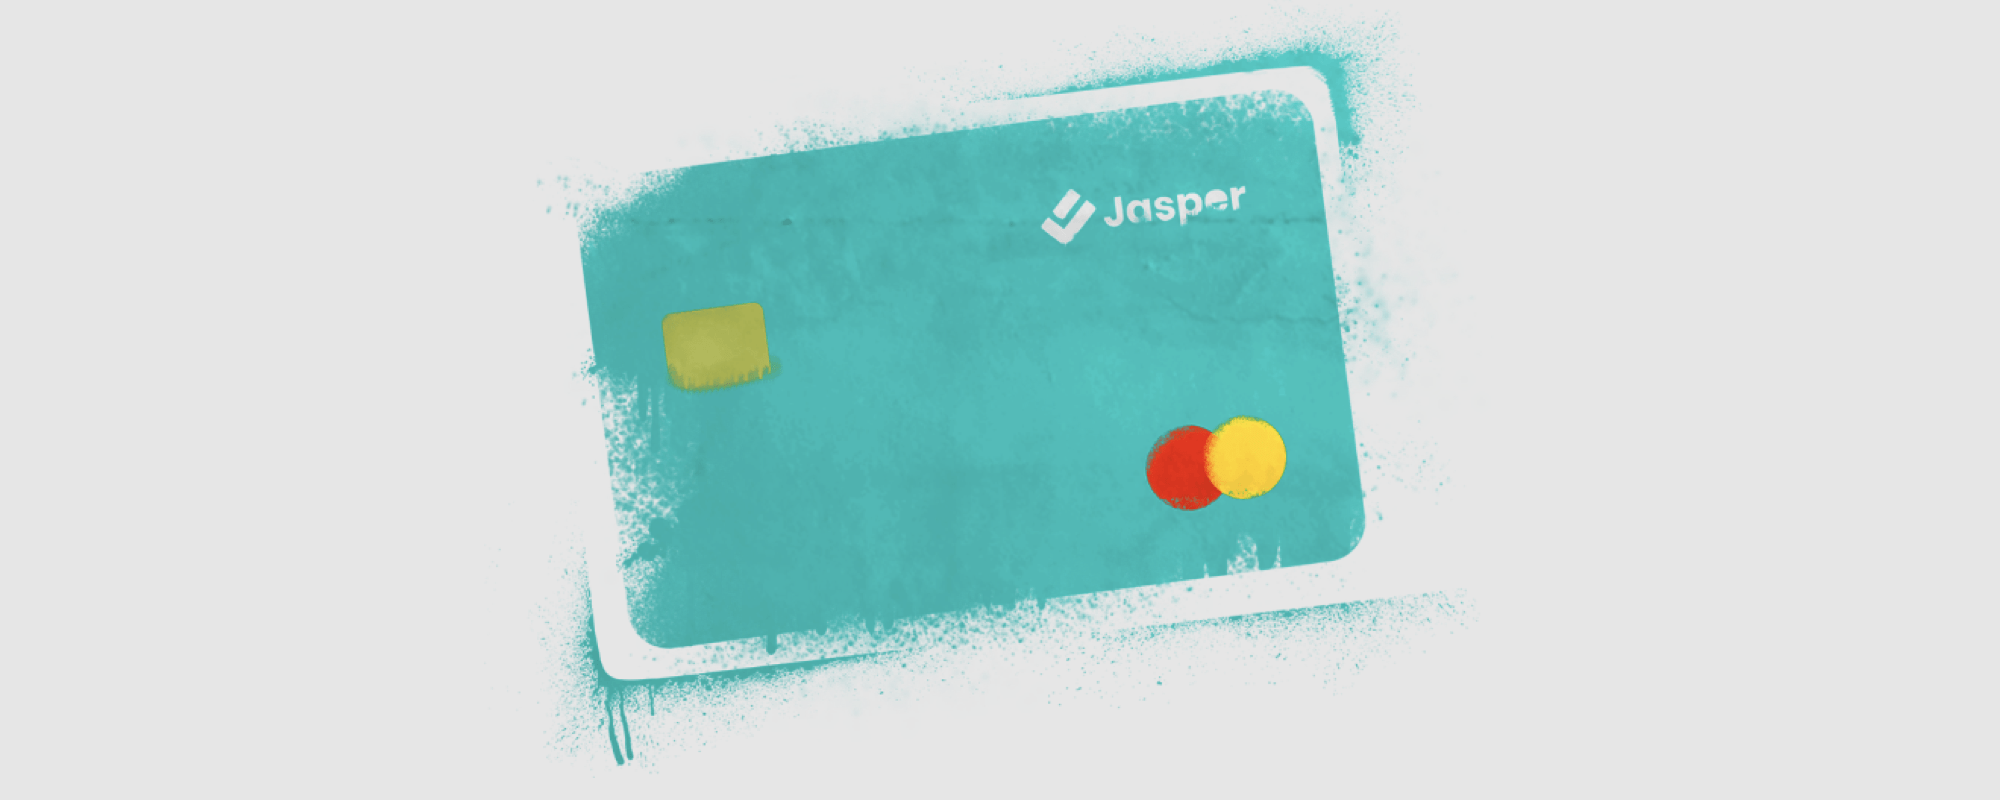 Jasper Credit Card